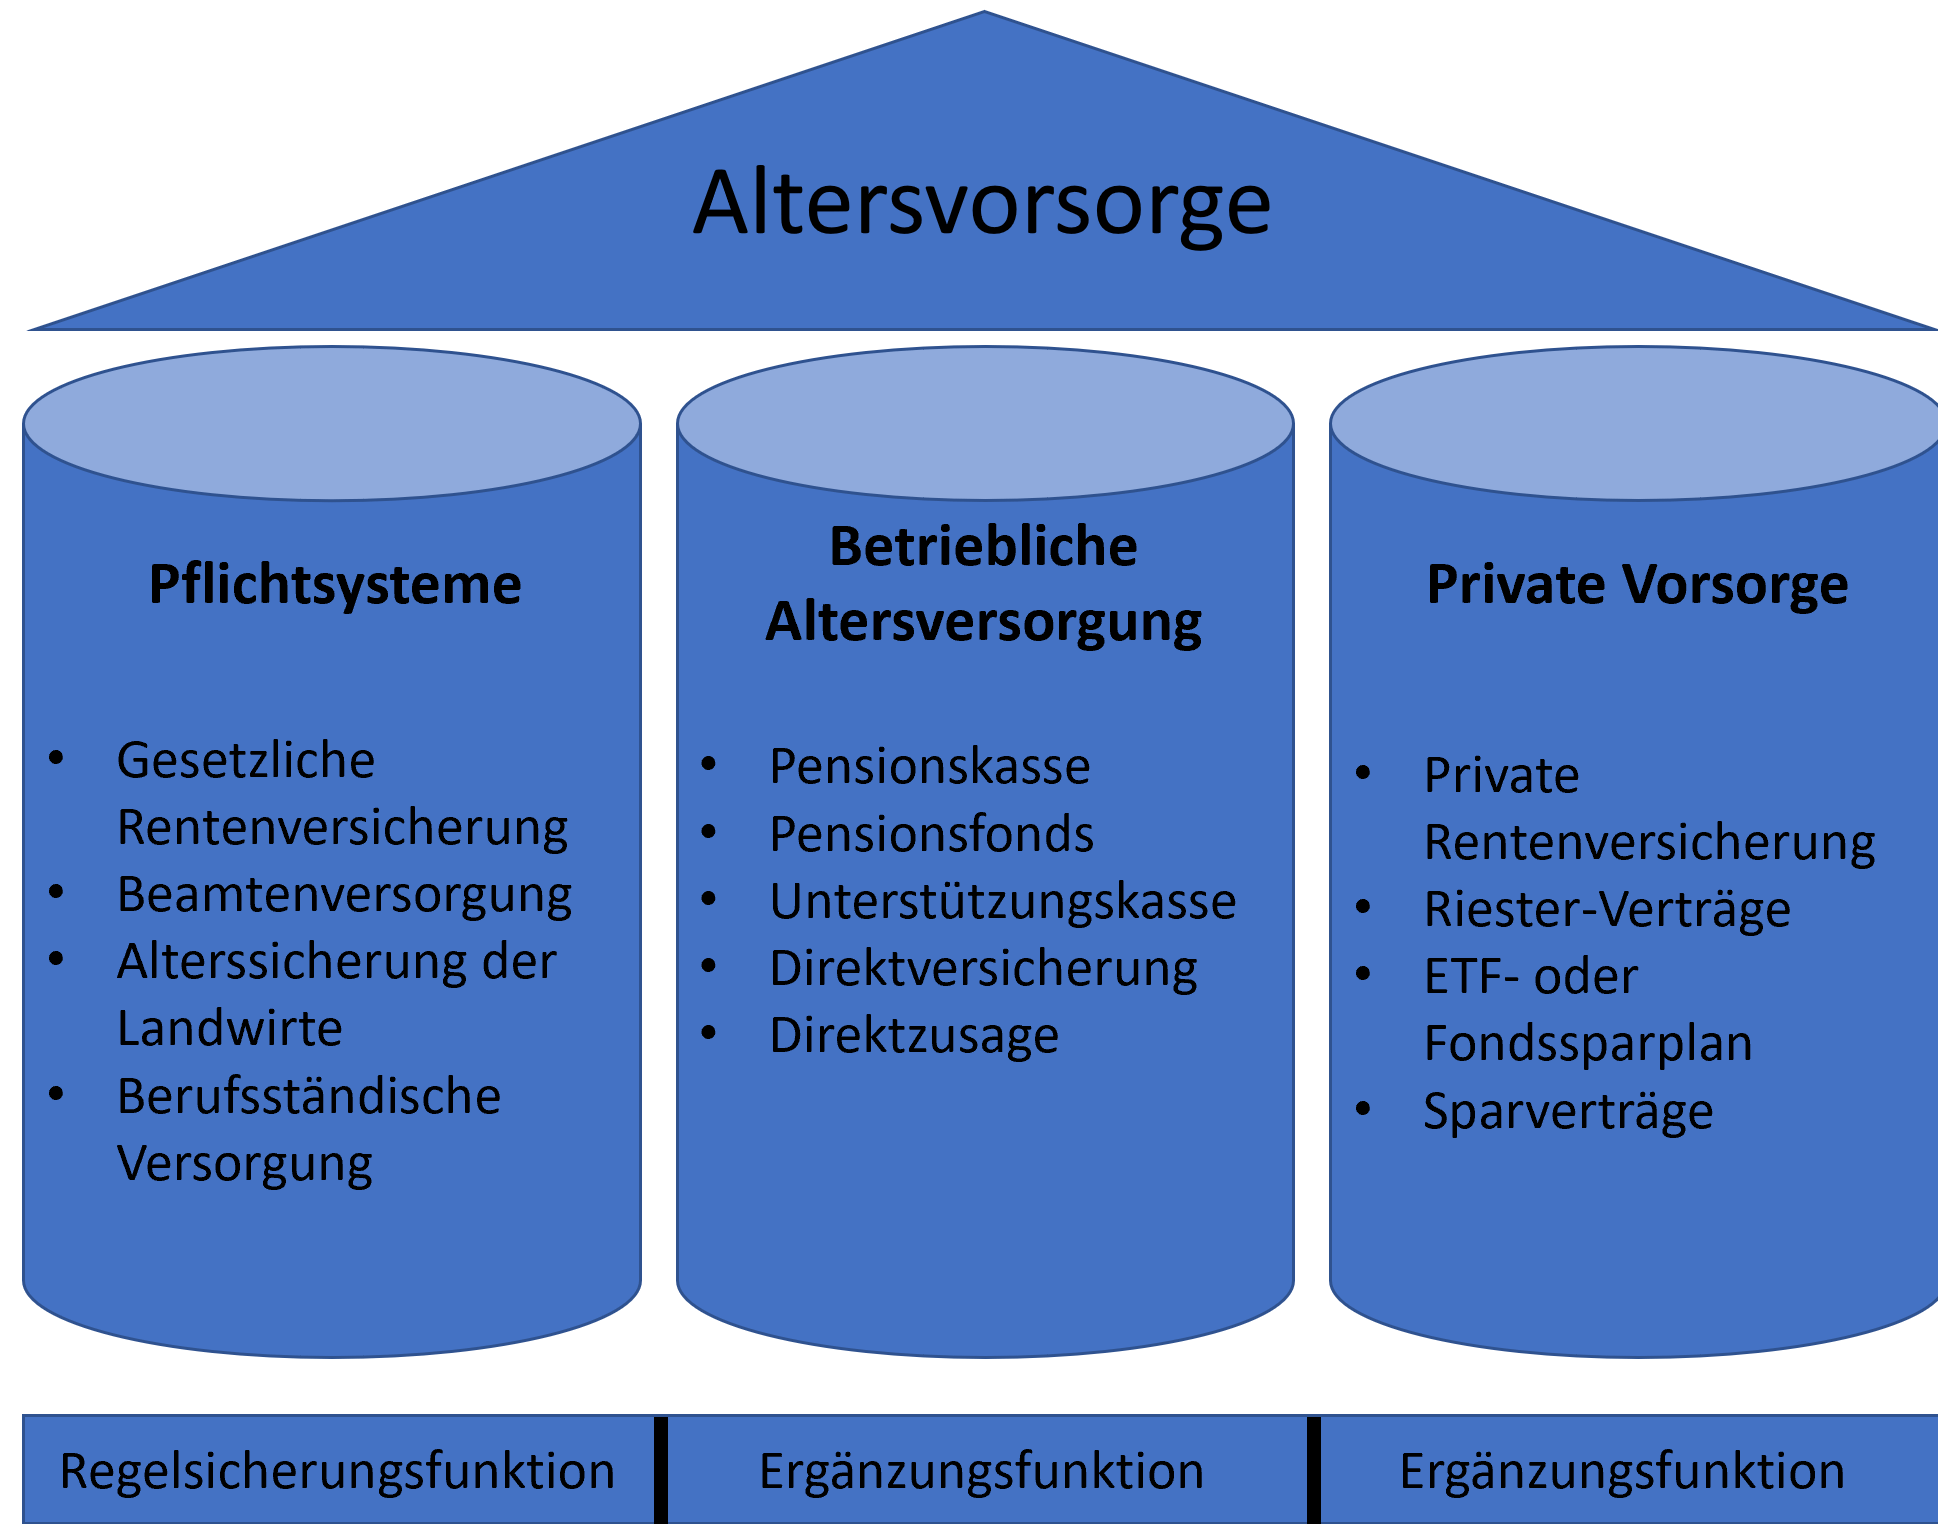 Altersvorsorge, Deutschland, 3-Säulen